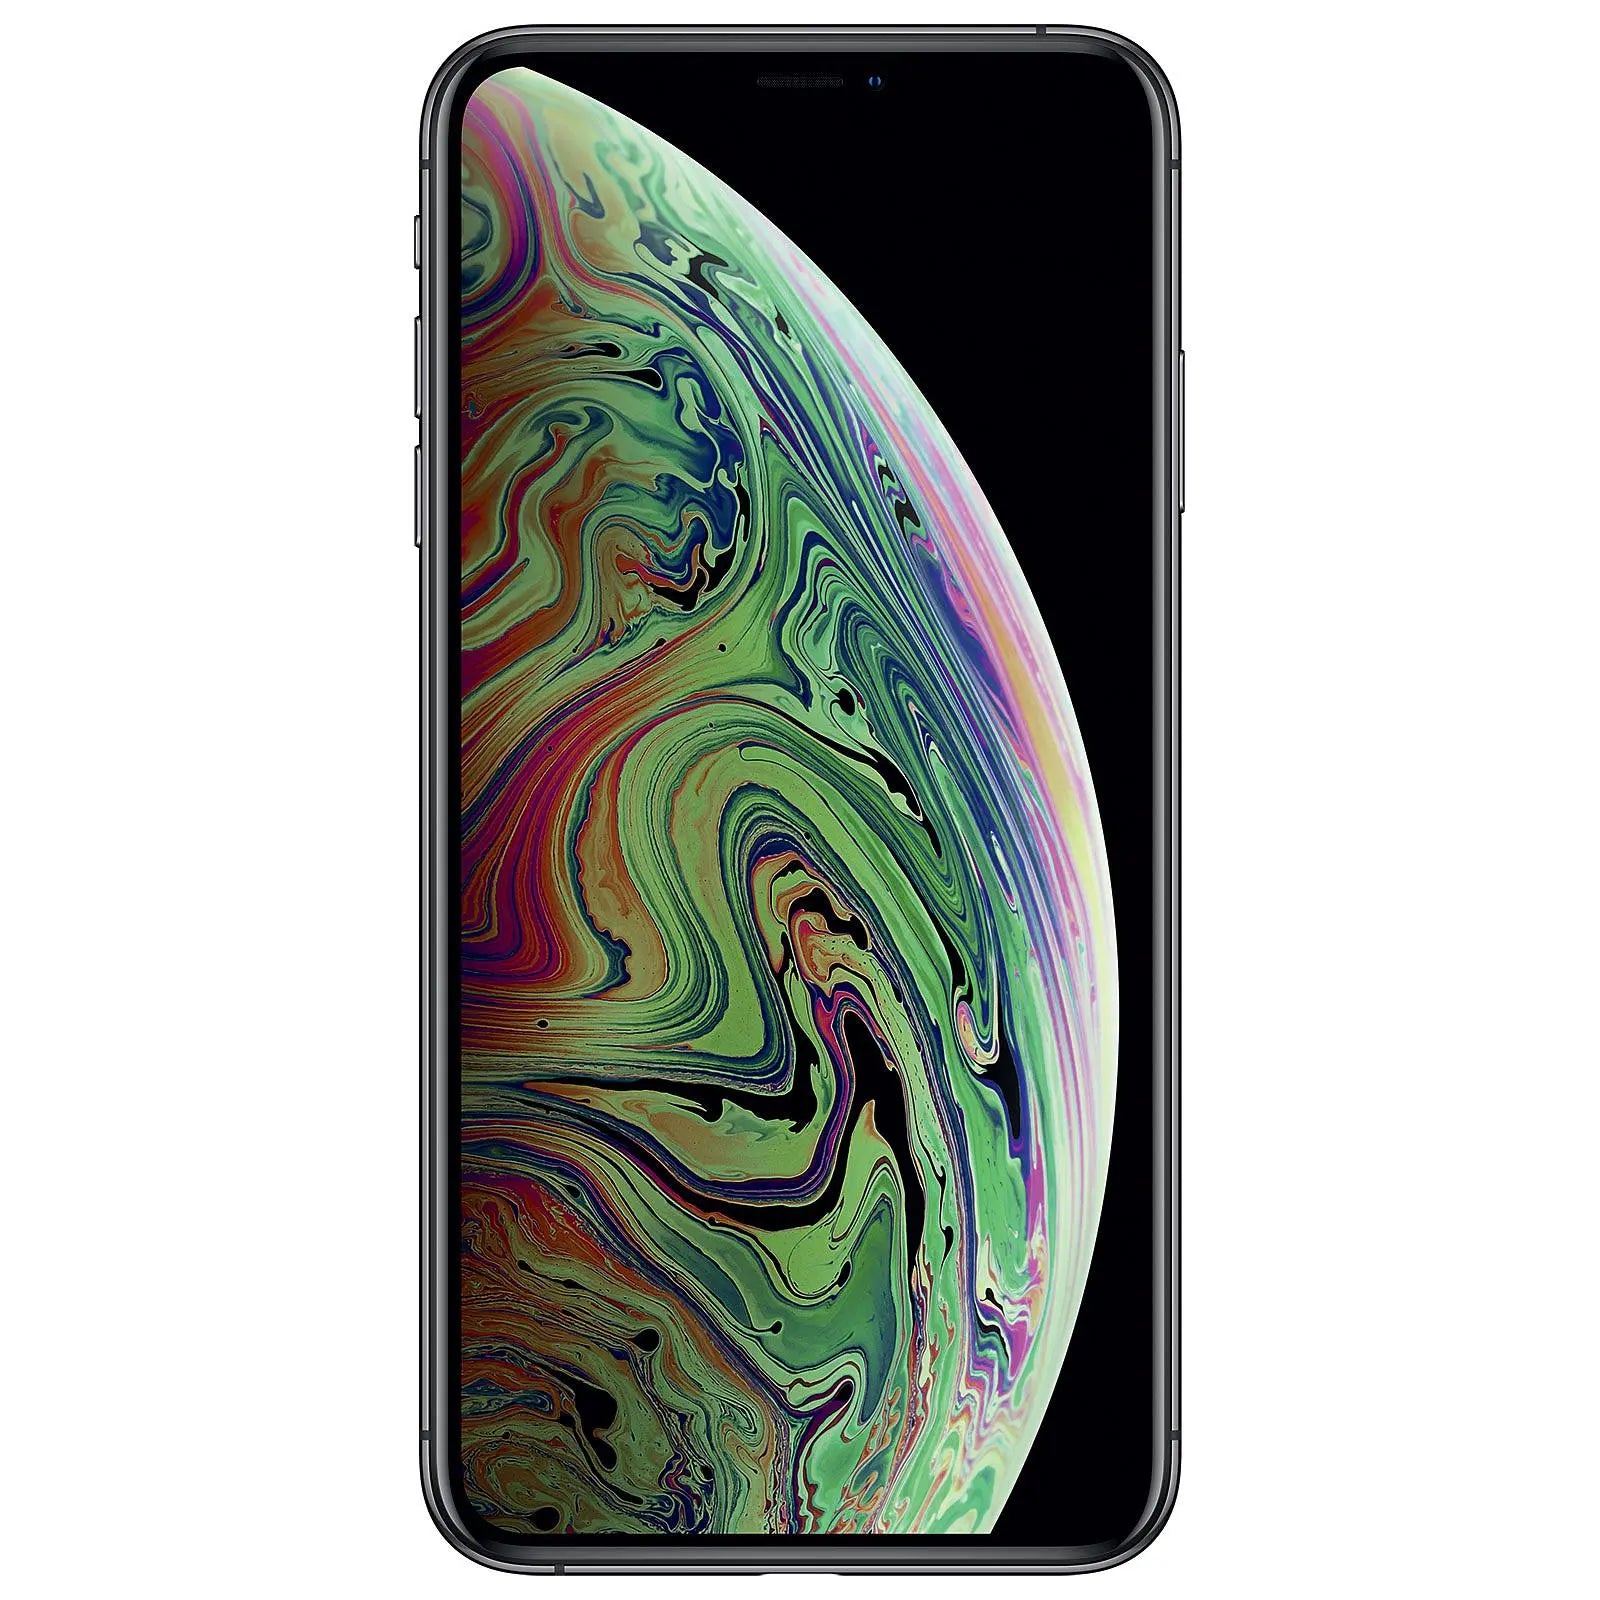 iPhone XS MAX 256GB rymdgrå 2018